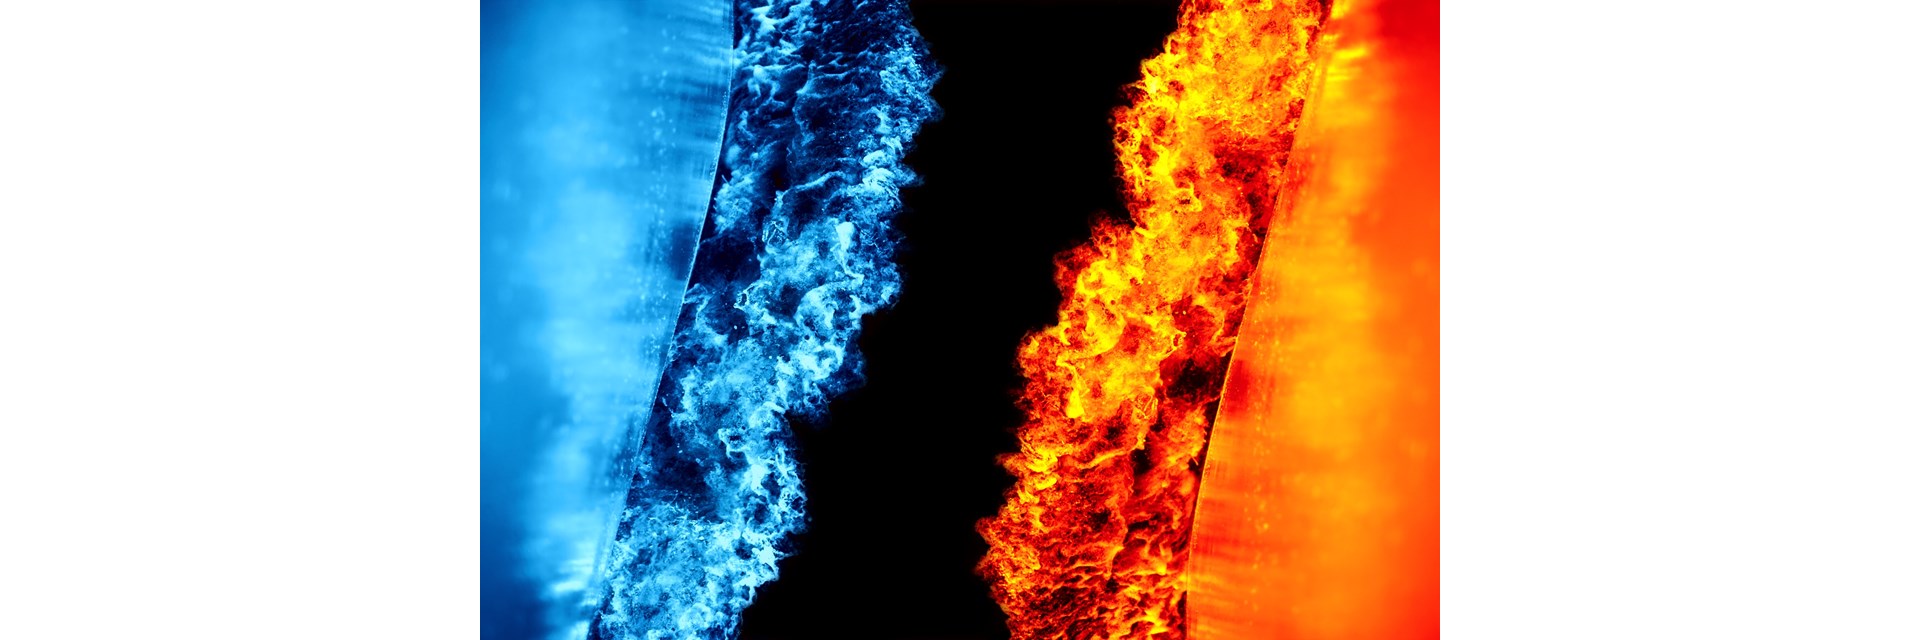 Na sliki s črnim ozadjem je desno oblak oranžnega ognja in levo oblak modrega ognja.  